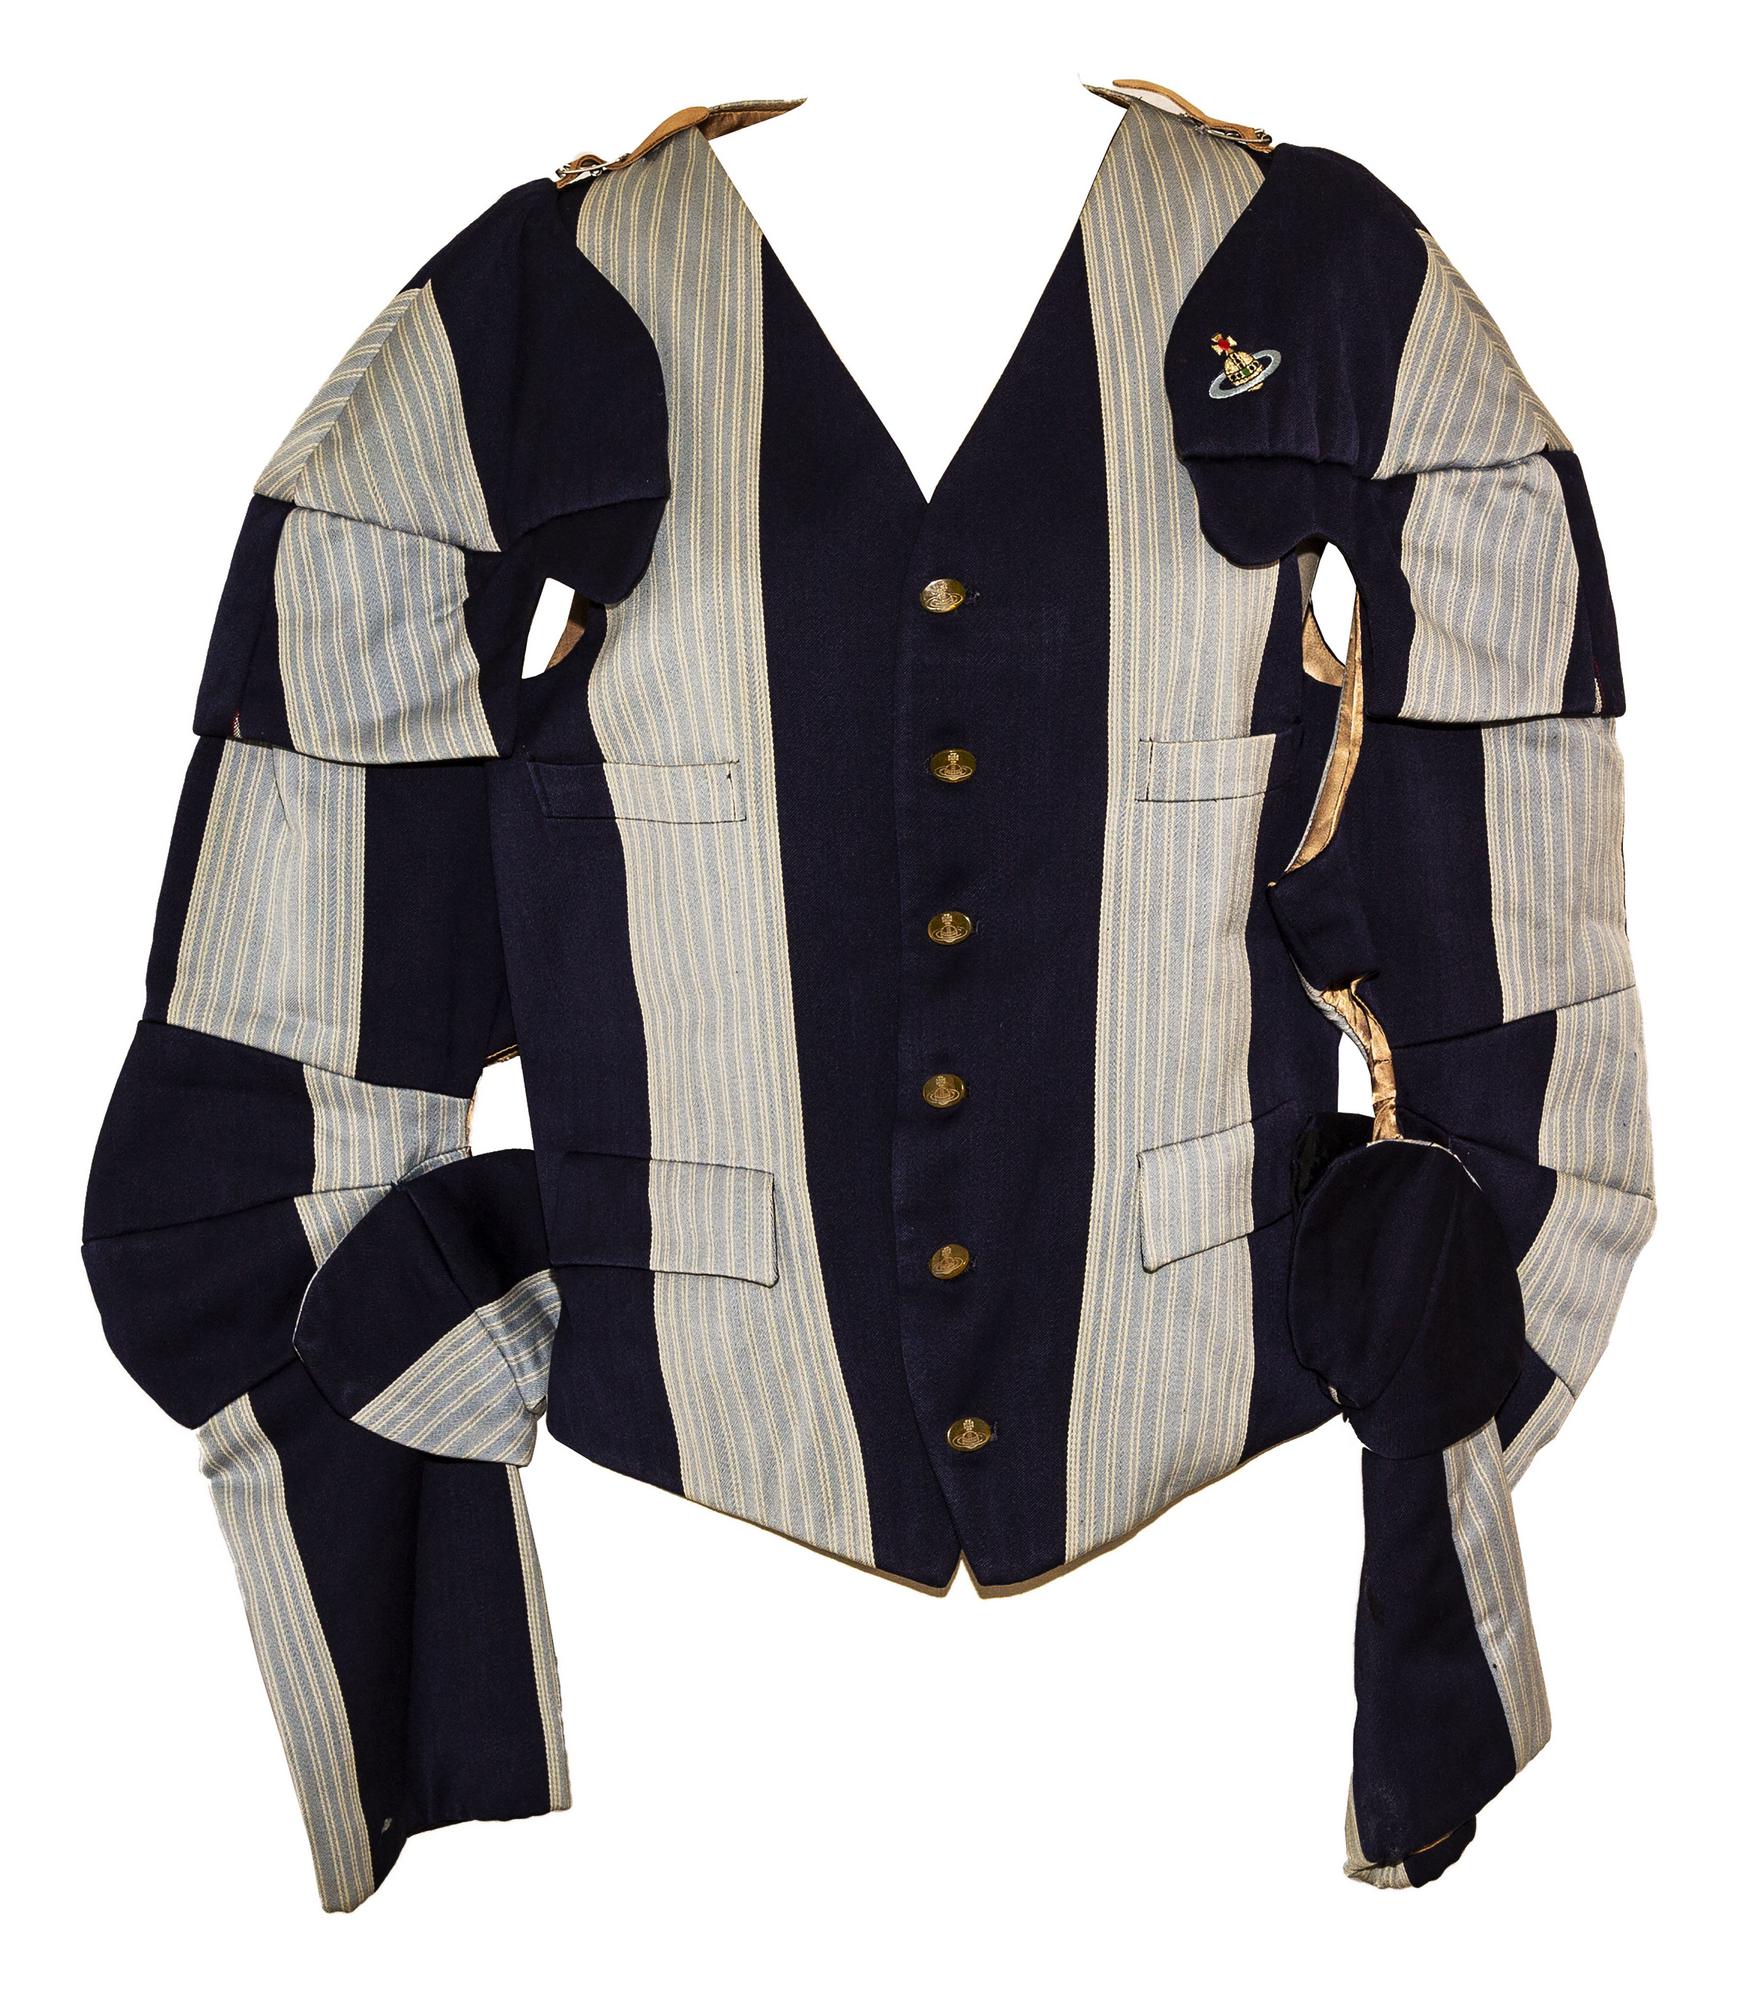 Vivienne Westwood ARMOUR JACKET Description: F/W 1988/89 armor jacket 'Time...